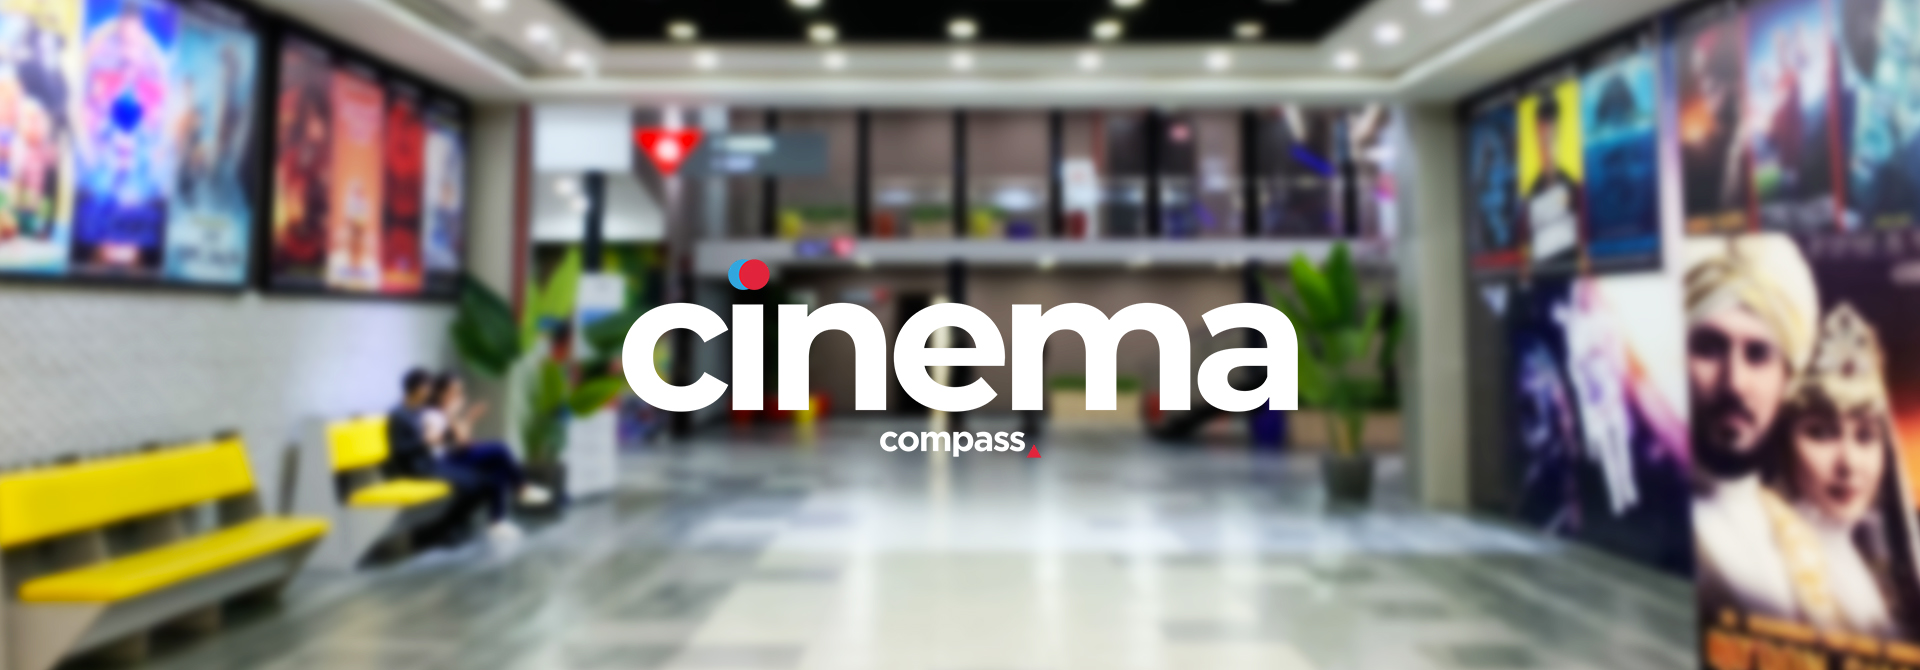 Кинотеатр «Compass Cinema - Большой Зал №1» в Ташкенте - расписание фильмов, афиша кино, адрес, телефоны и другие контакты